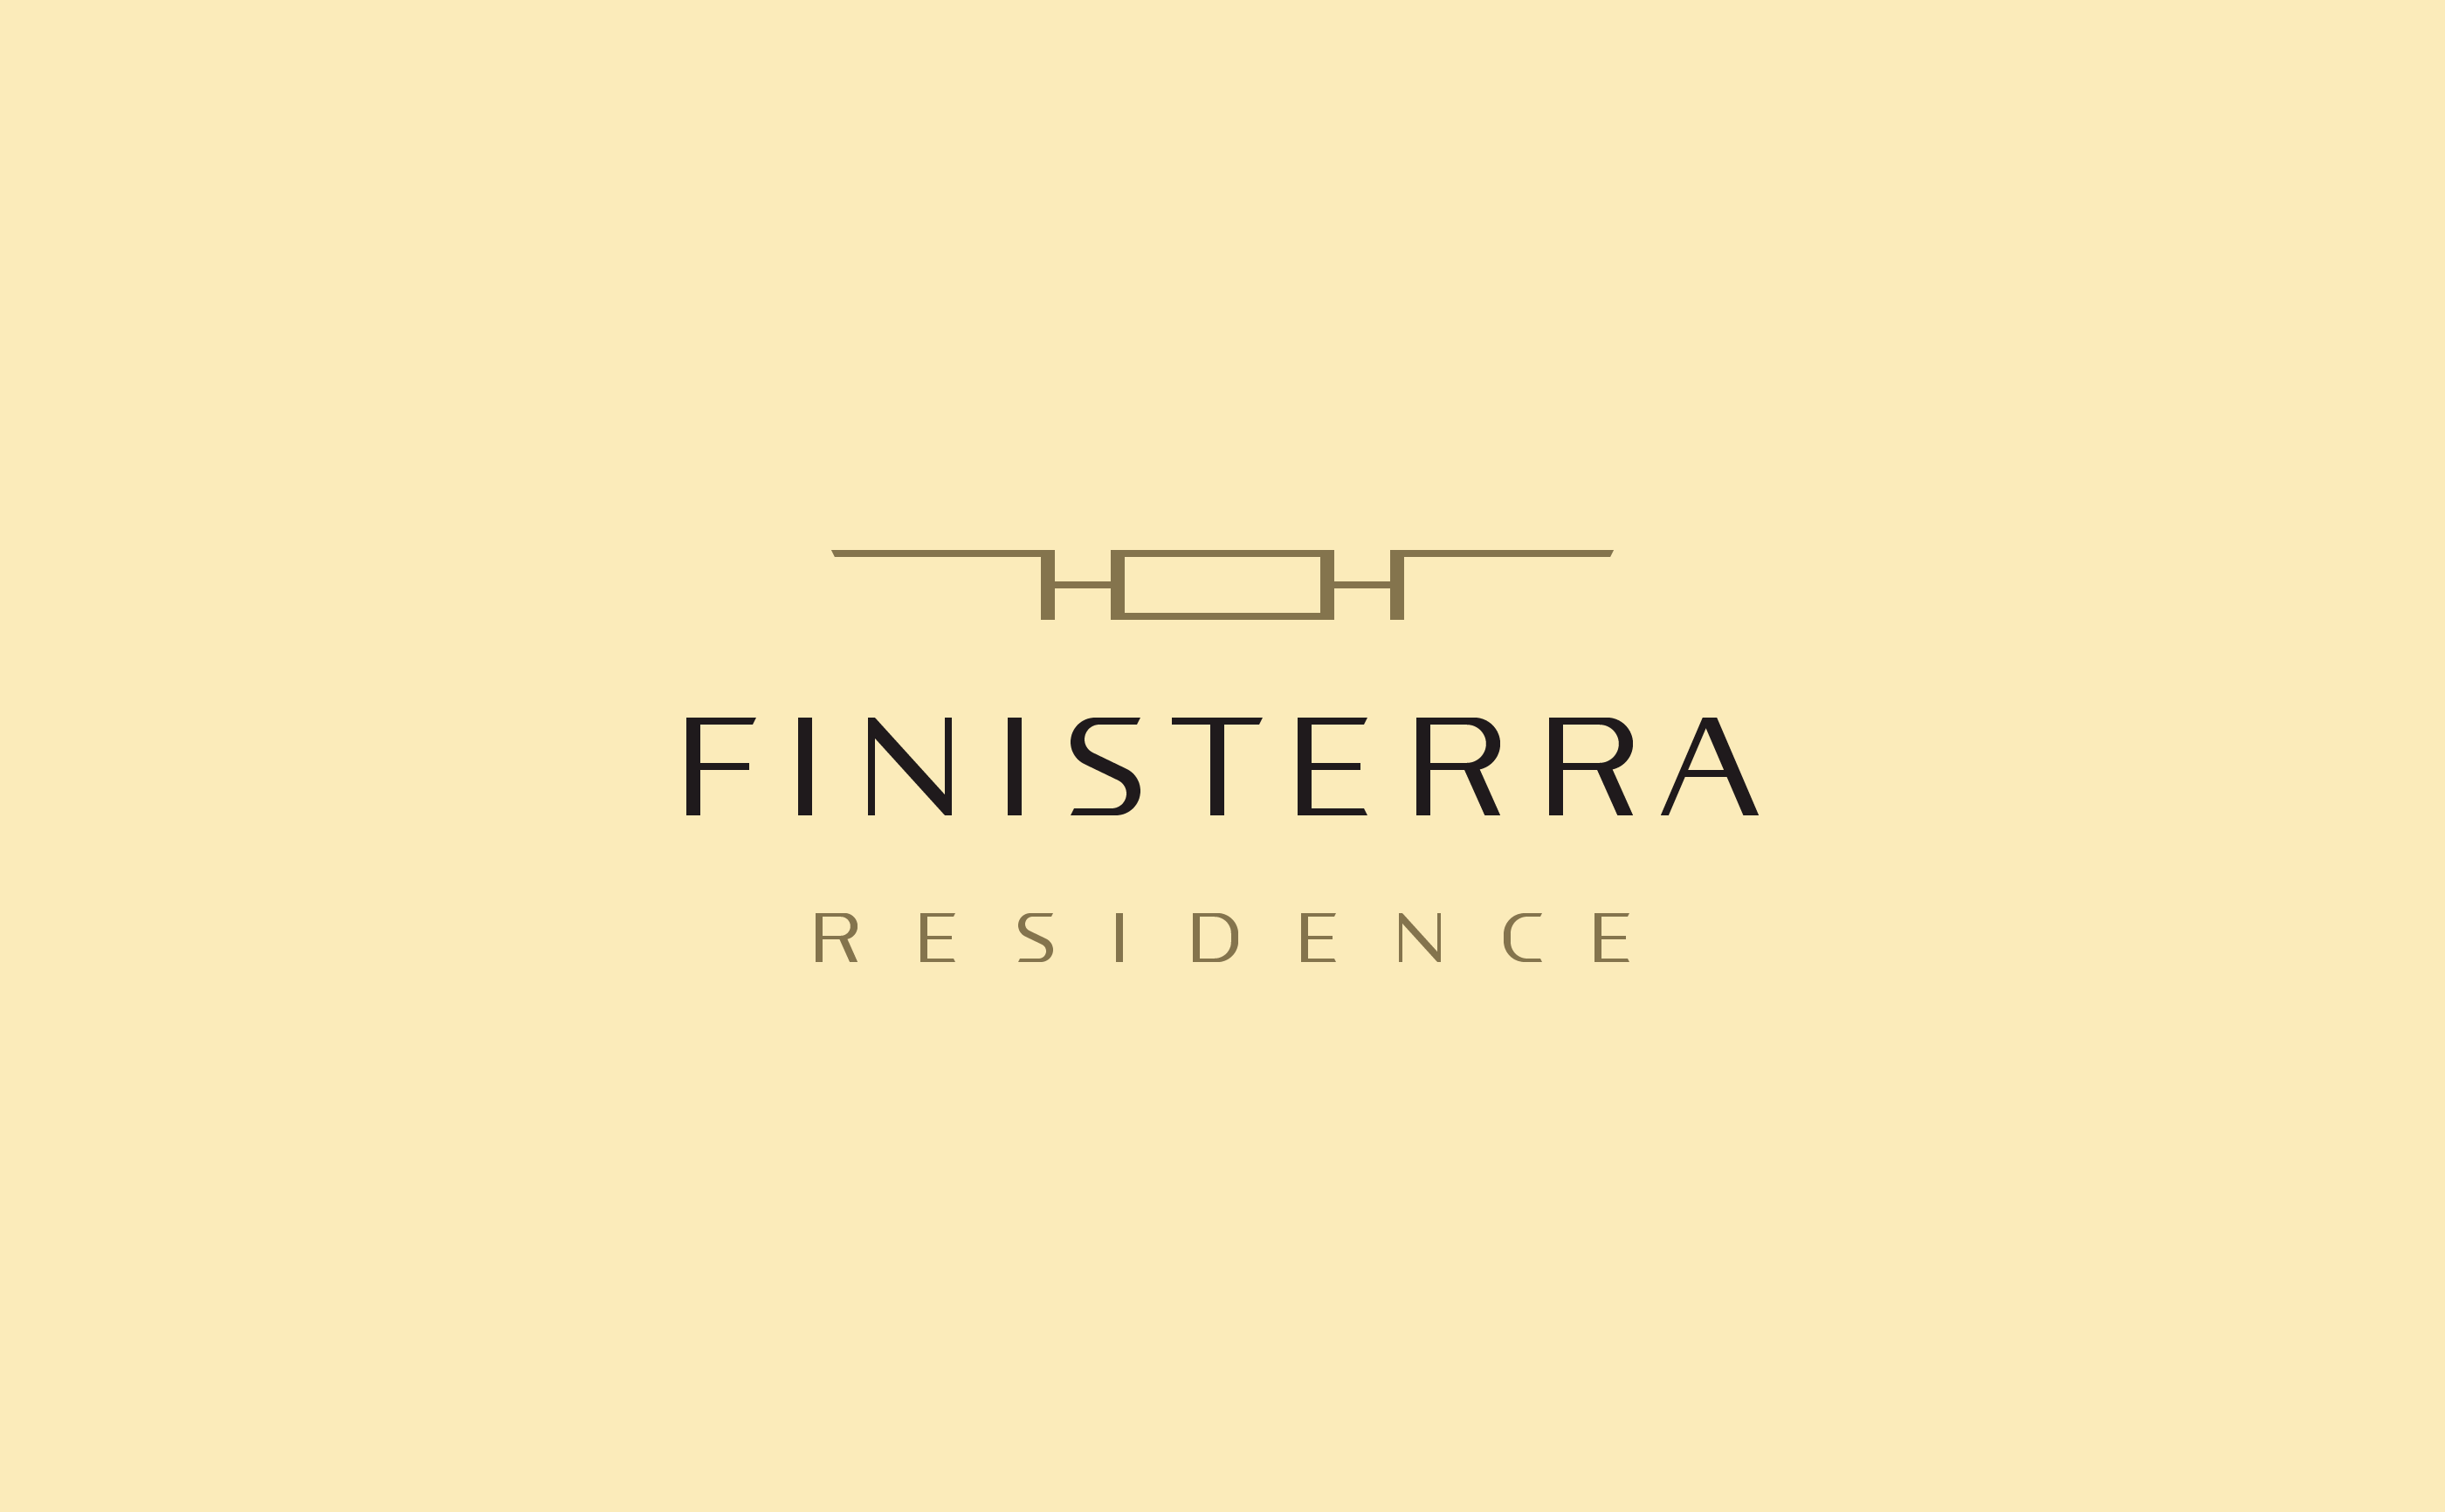 Finisterra_006